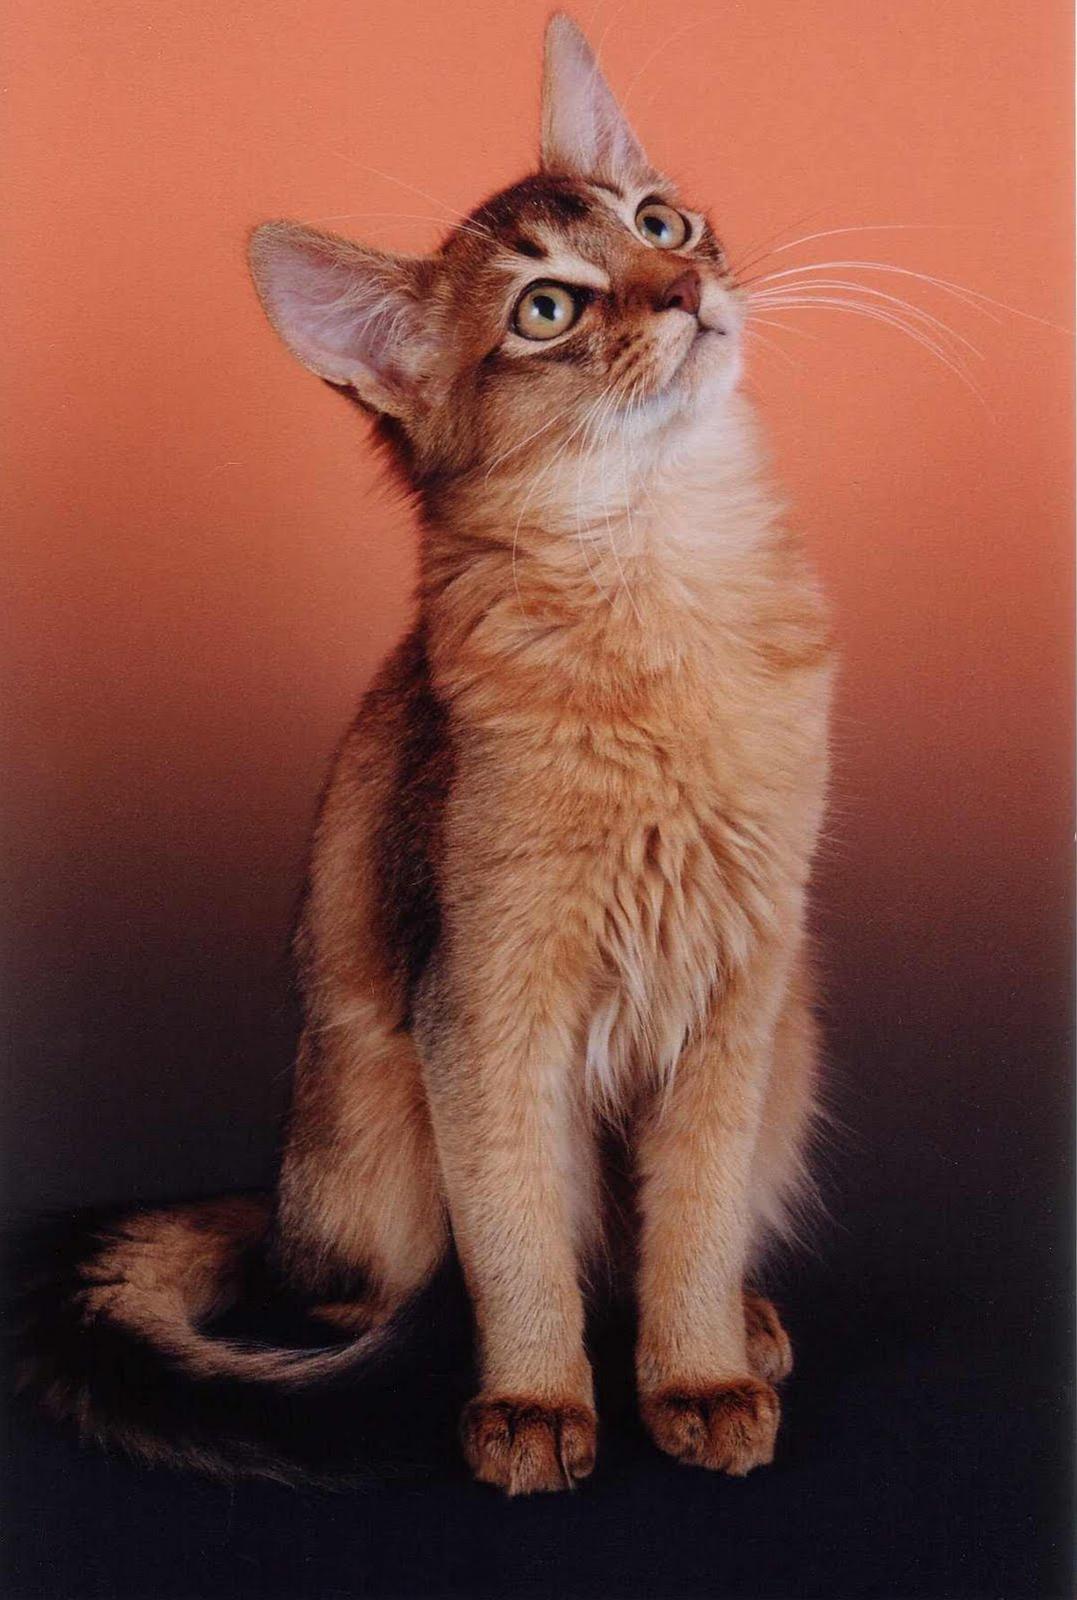 かわいい猫画像No.45「猫−ソマリの壁紙画像「お座り・見上げて」」